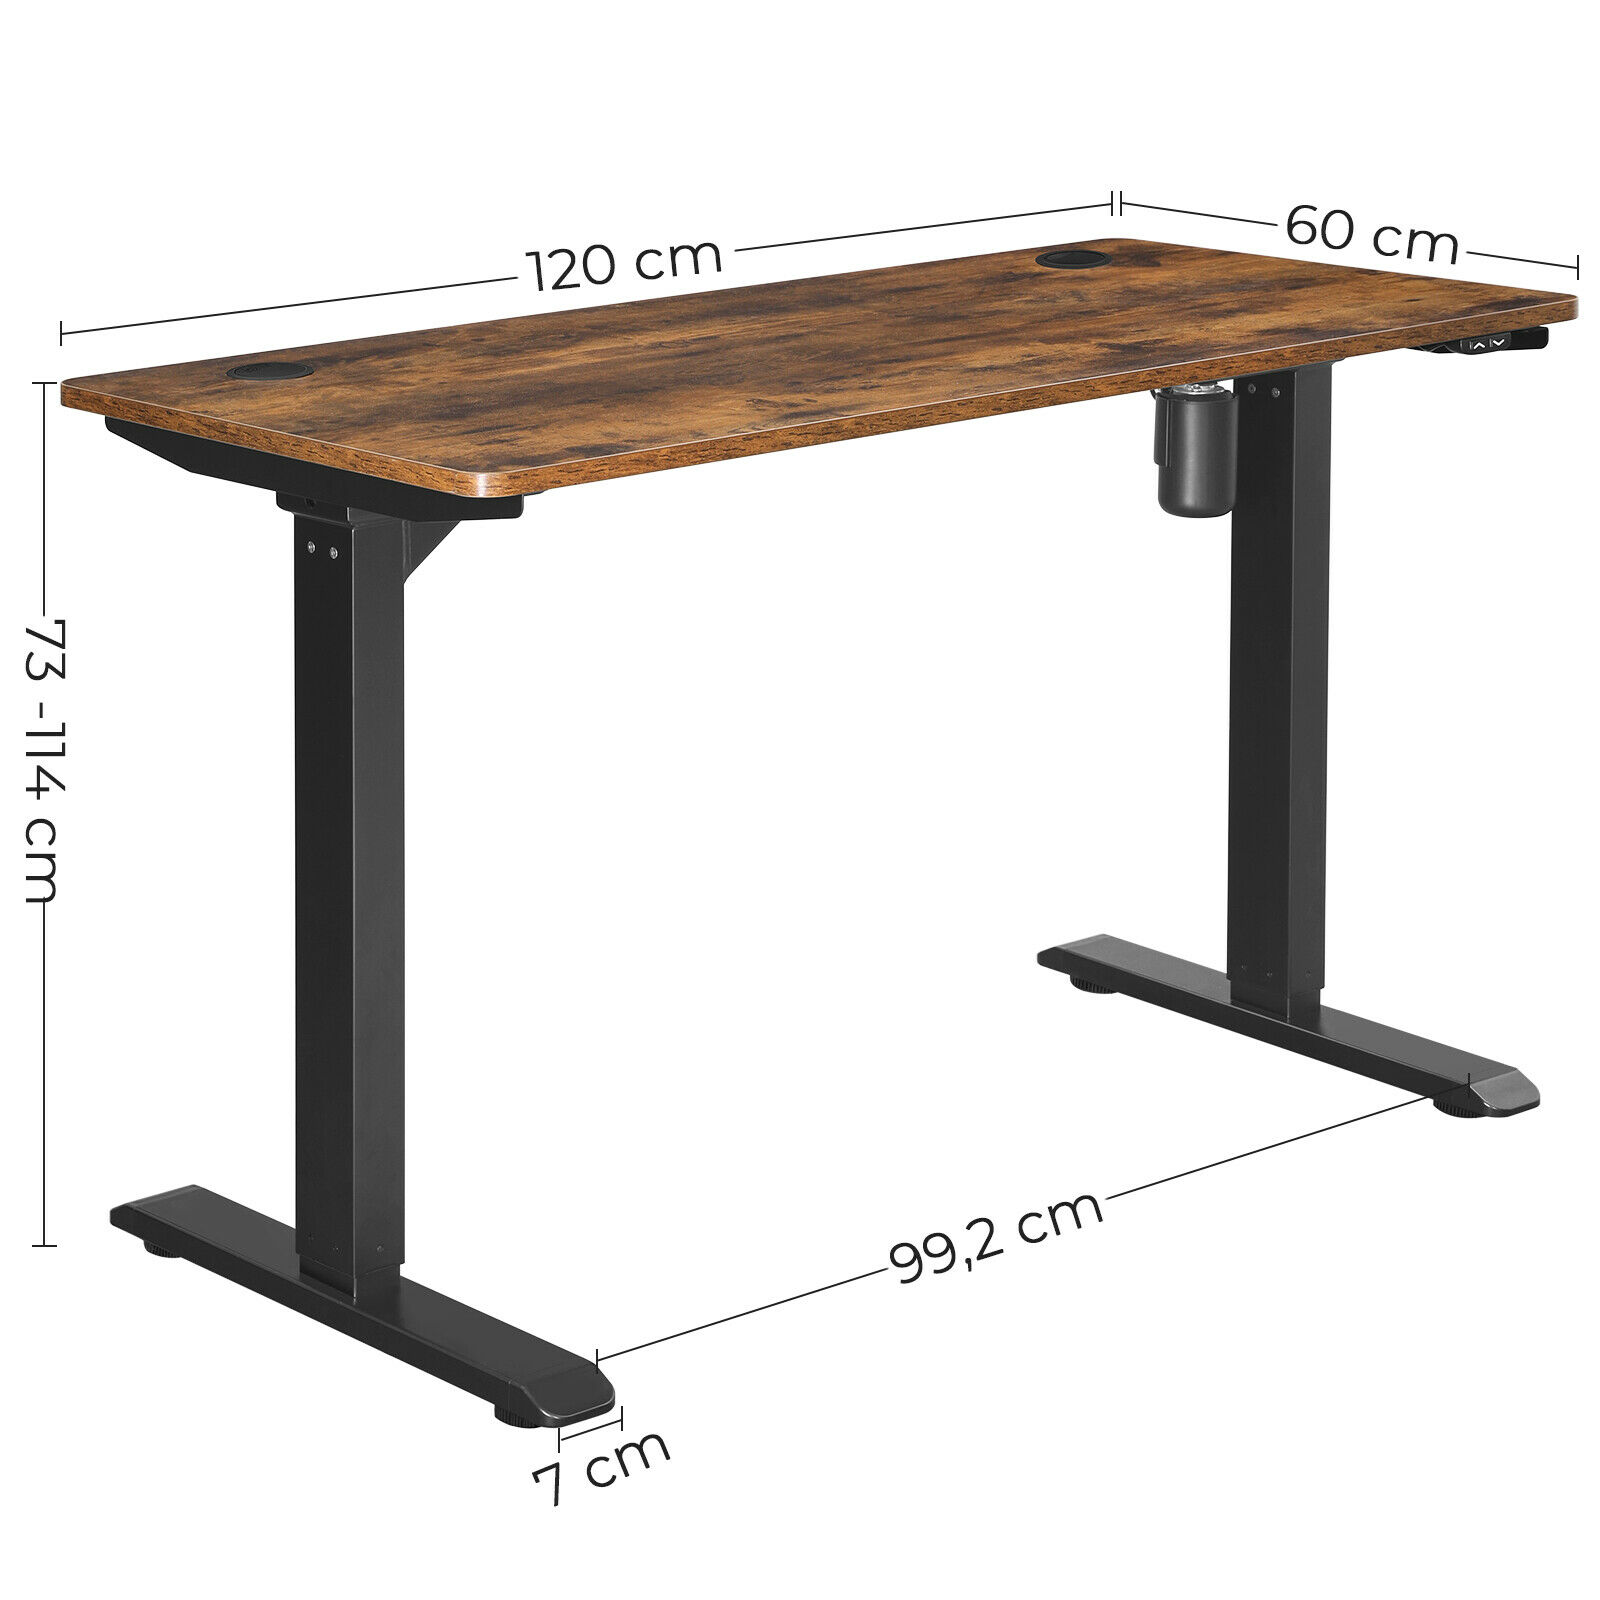 Rena Height Adjustable Standing Desk Rustic Wood Top